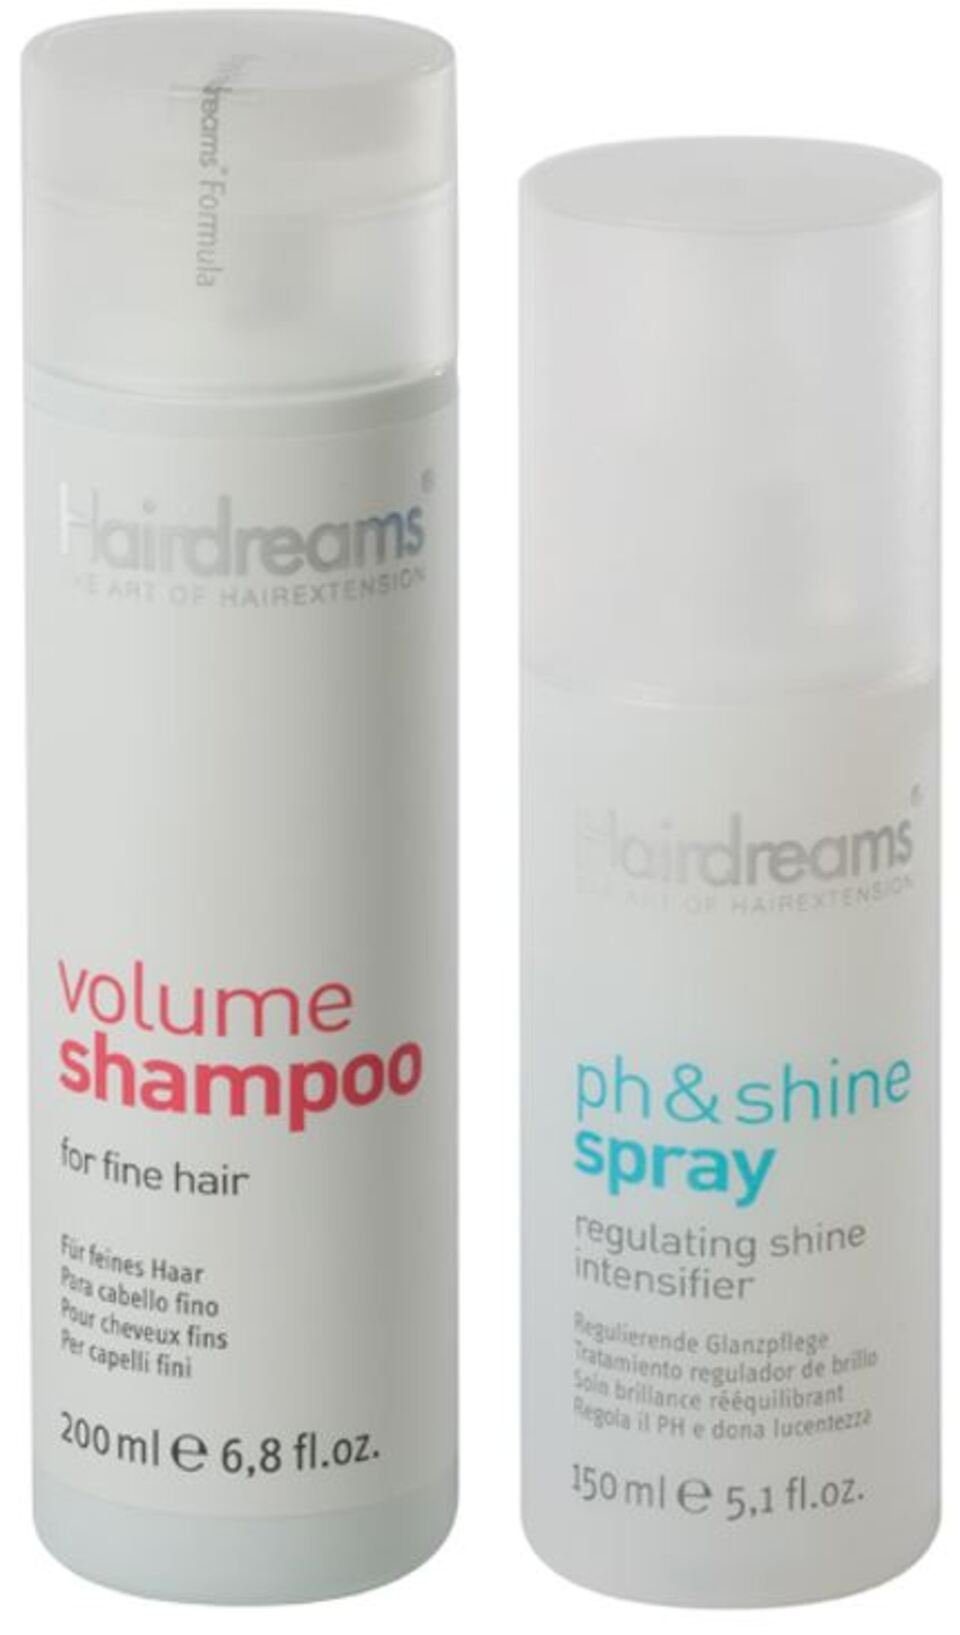 Haarpflege-Set Hairdreams & Shampoo mit Haare Spray, Echthaarverlängerung ph&shine 2-tlg., für Set, Volumen